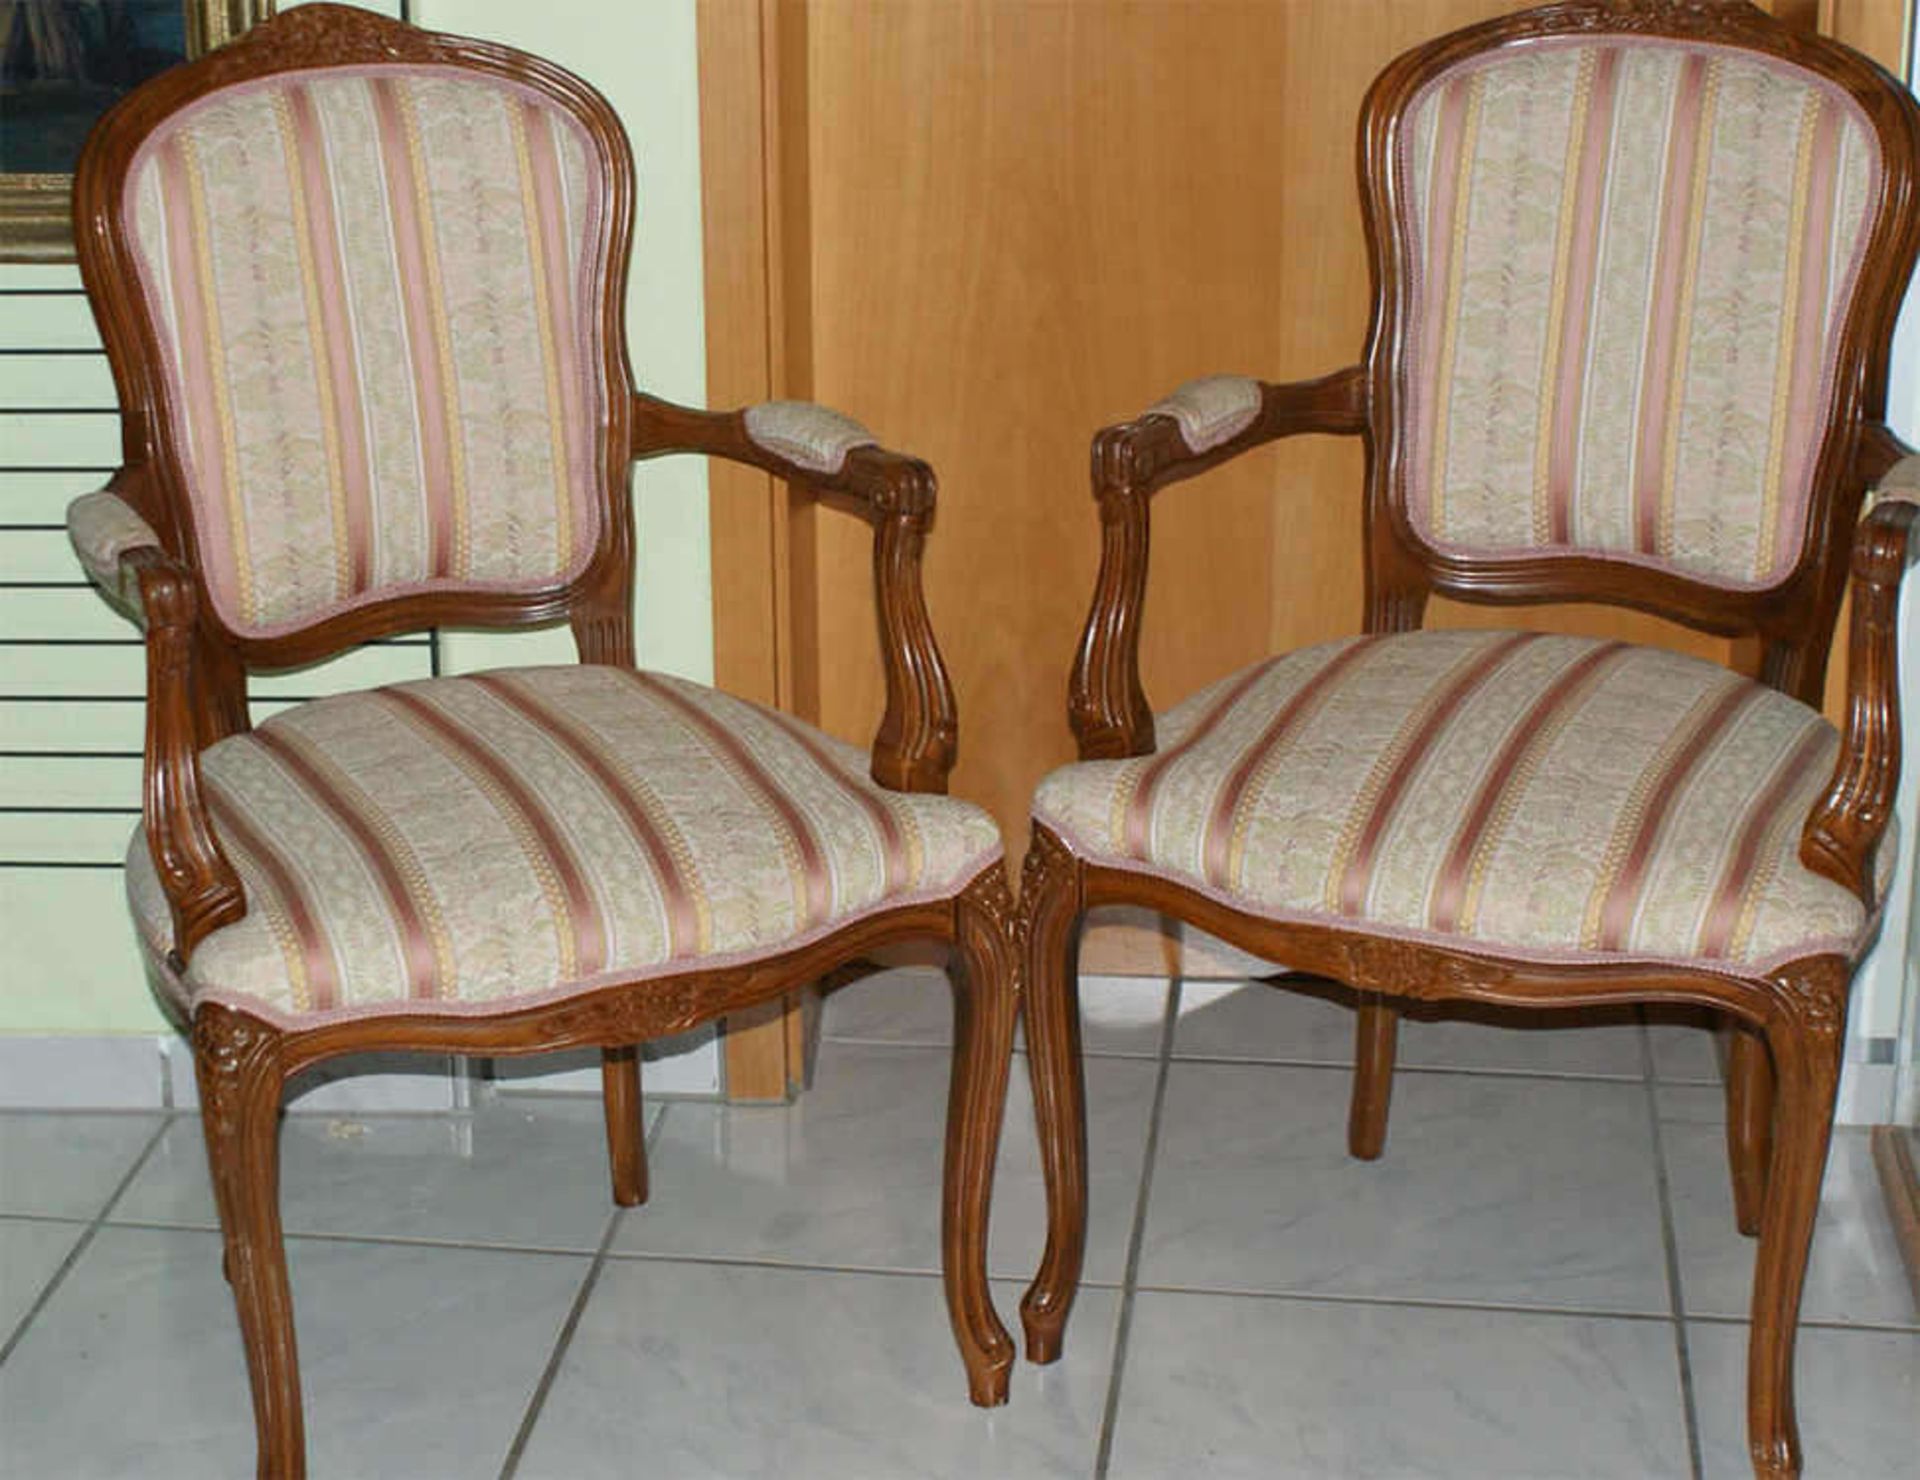 2 Armlehnen-Stühle mit floralem Bezug, guter Zustand.